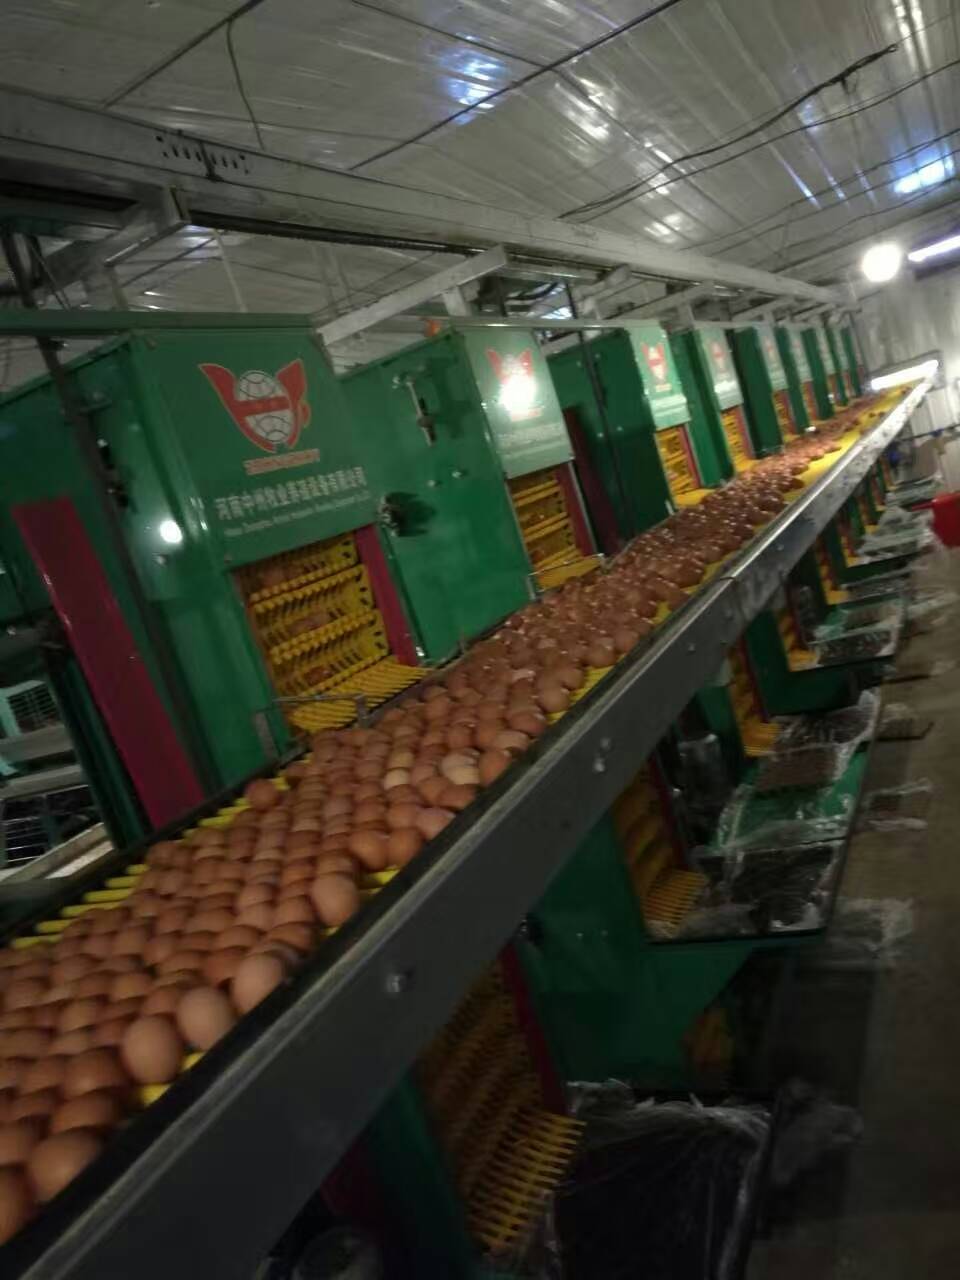 层叠式蛋鸡笼 肉鸡笼生产厂家 自动化养鸡设备图片